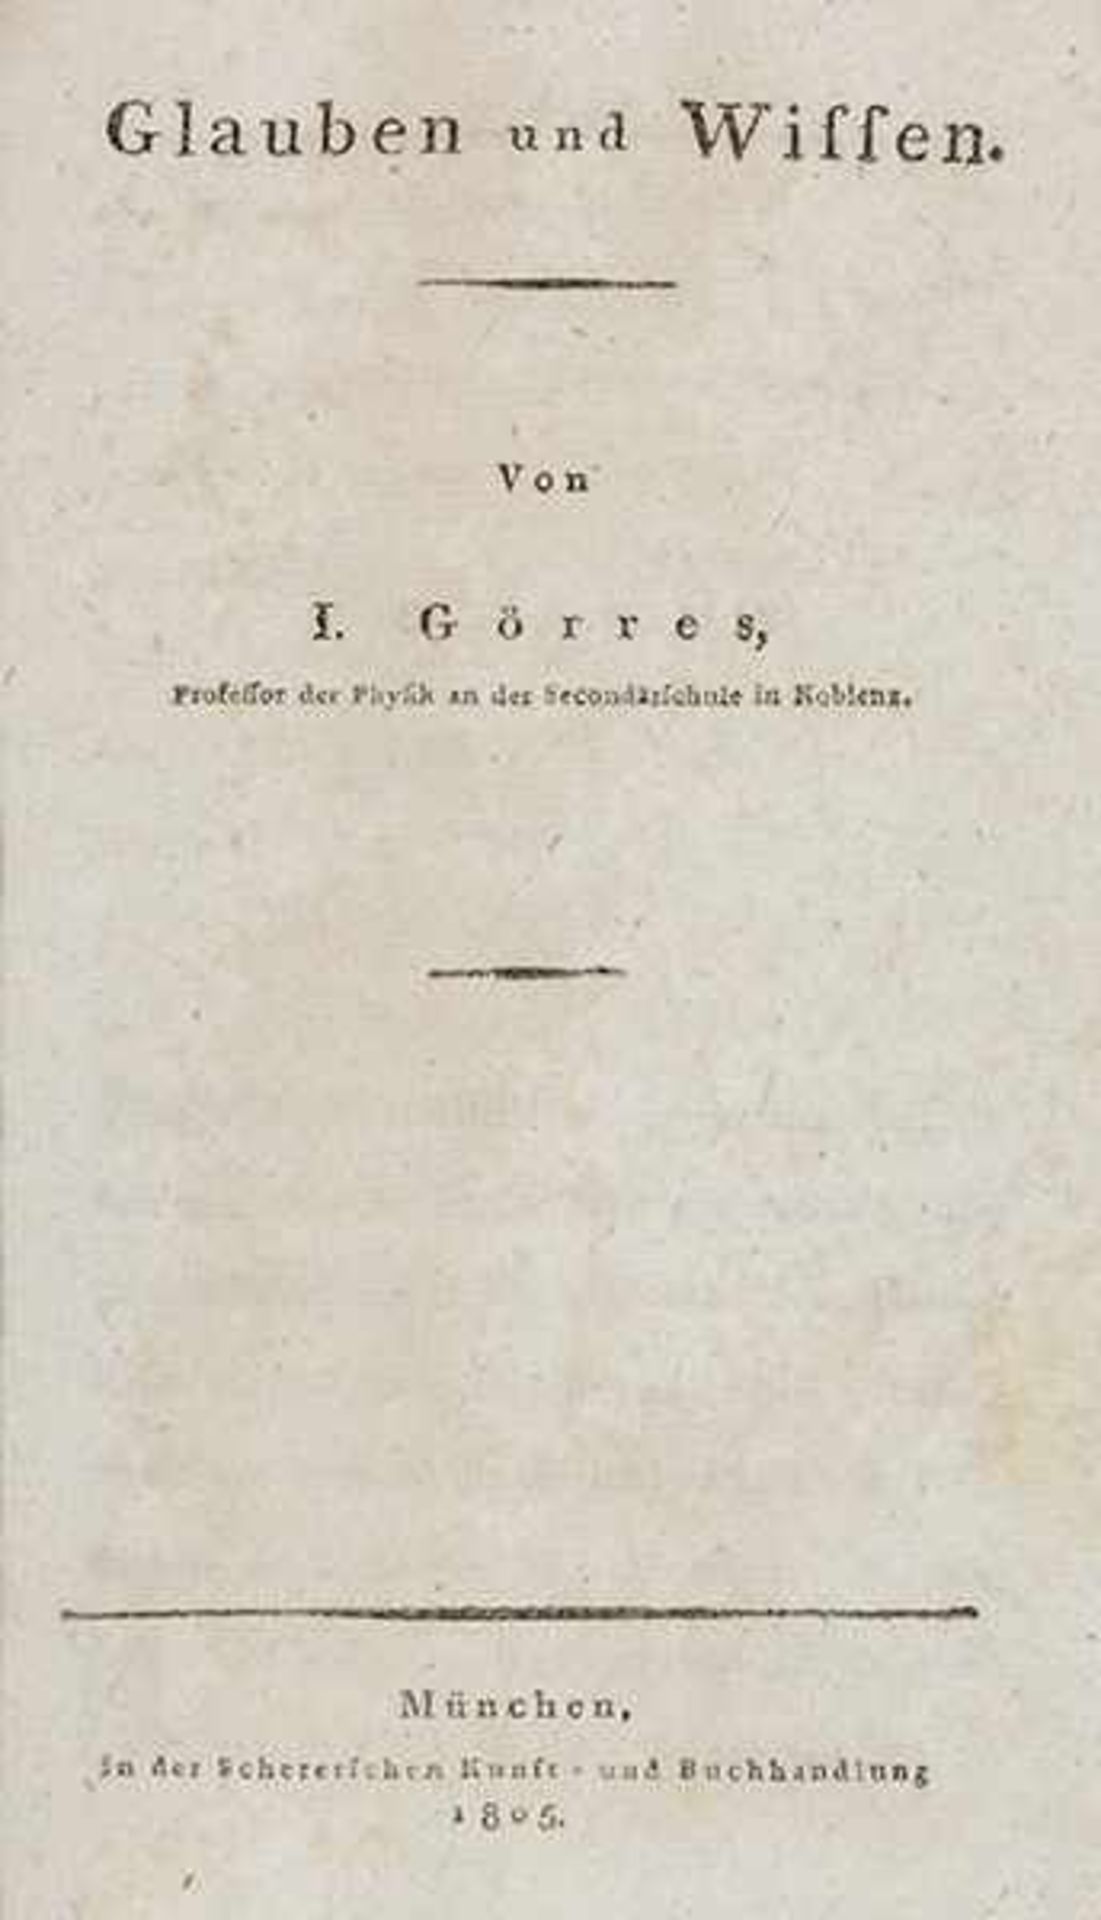 Görres, Joseph. Glauben und Wissen. München, Scherer, 1805. 148 S., 1 Bl. 20,2 x 12,5 cm.